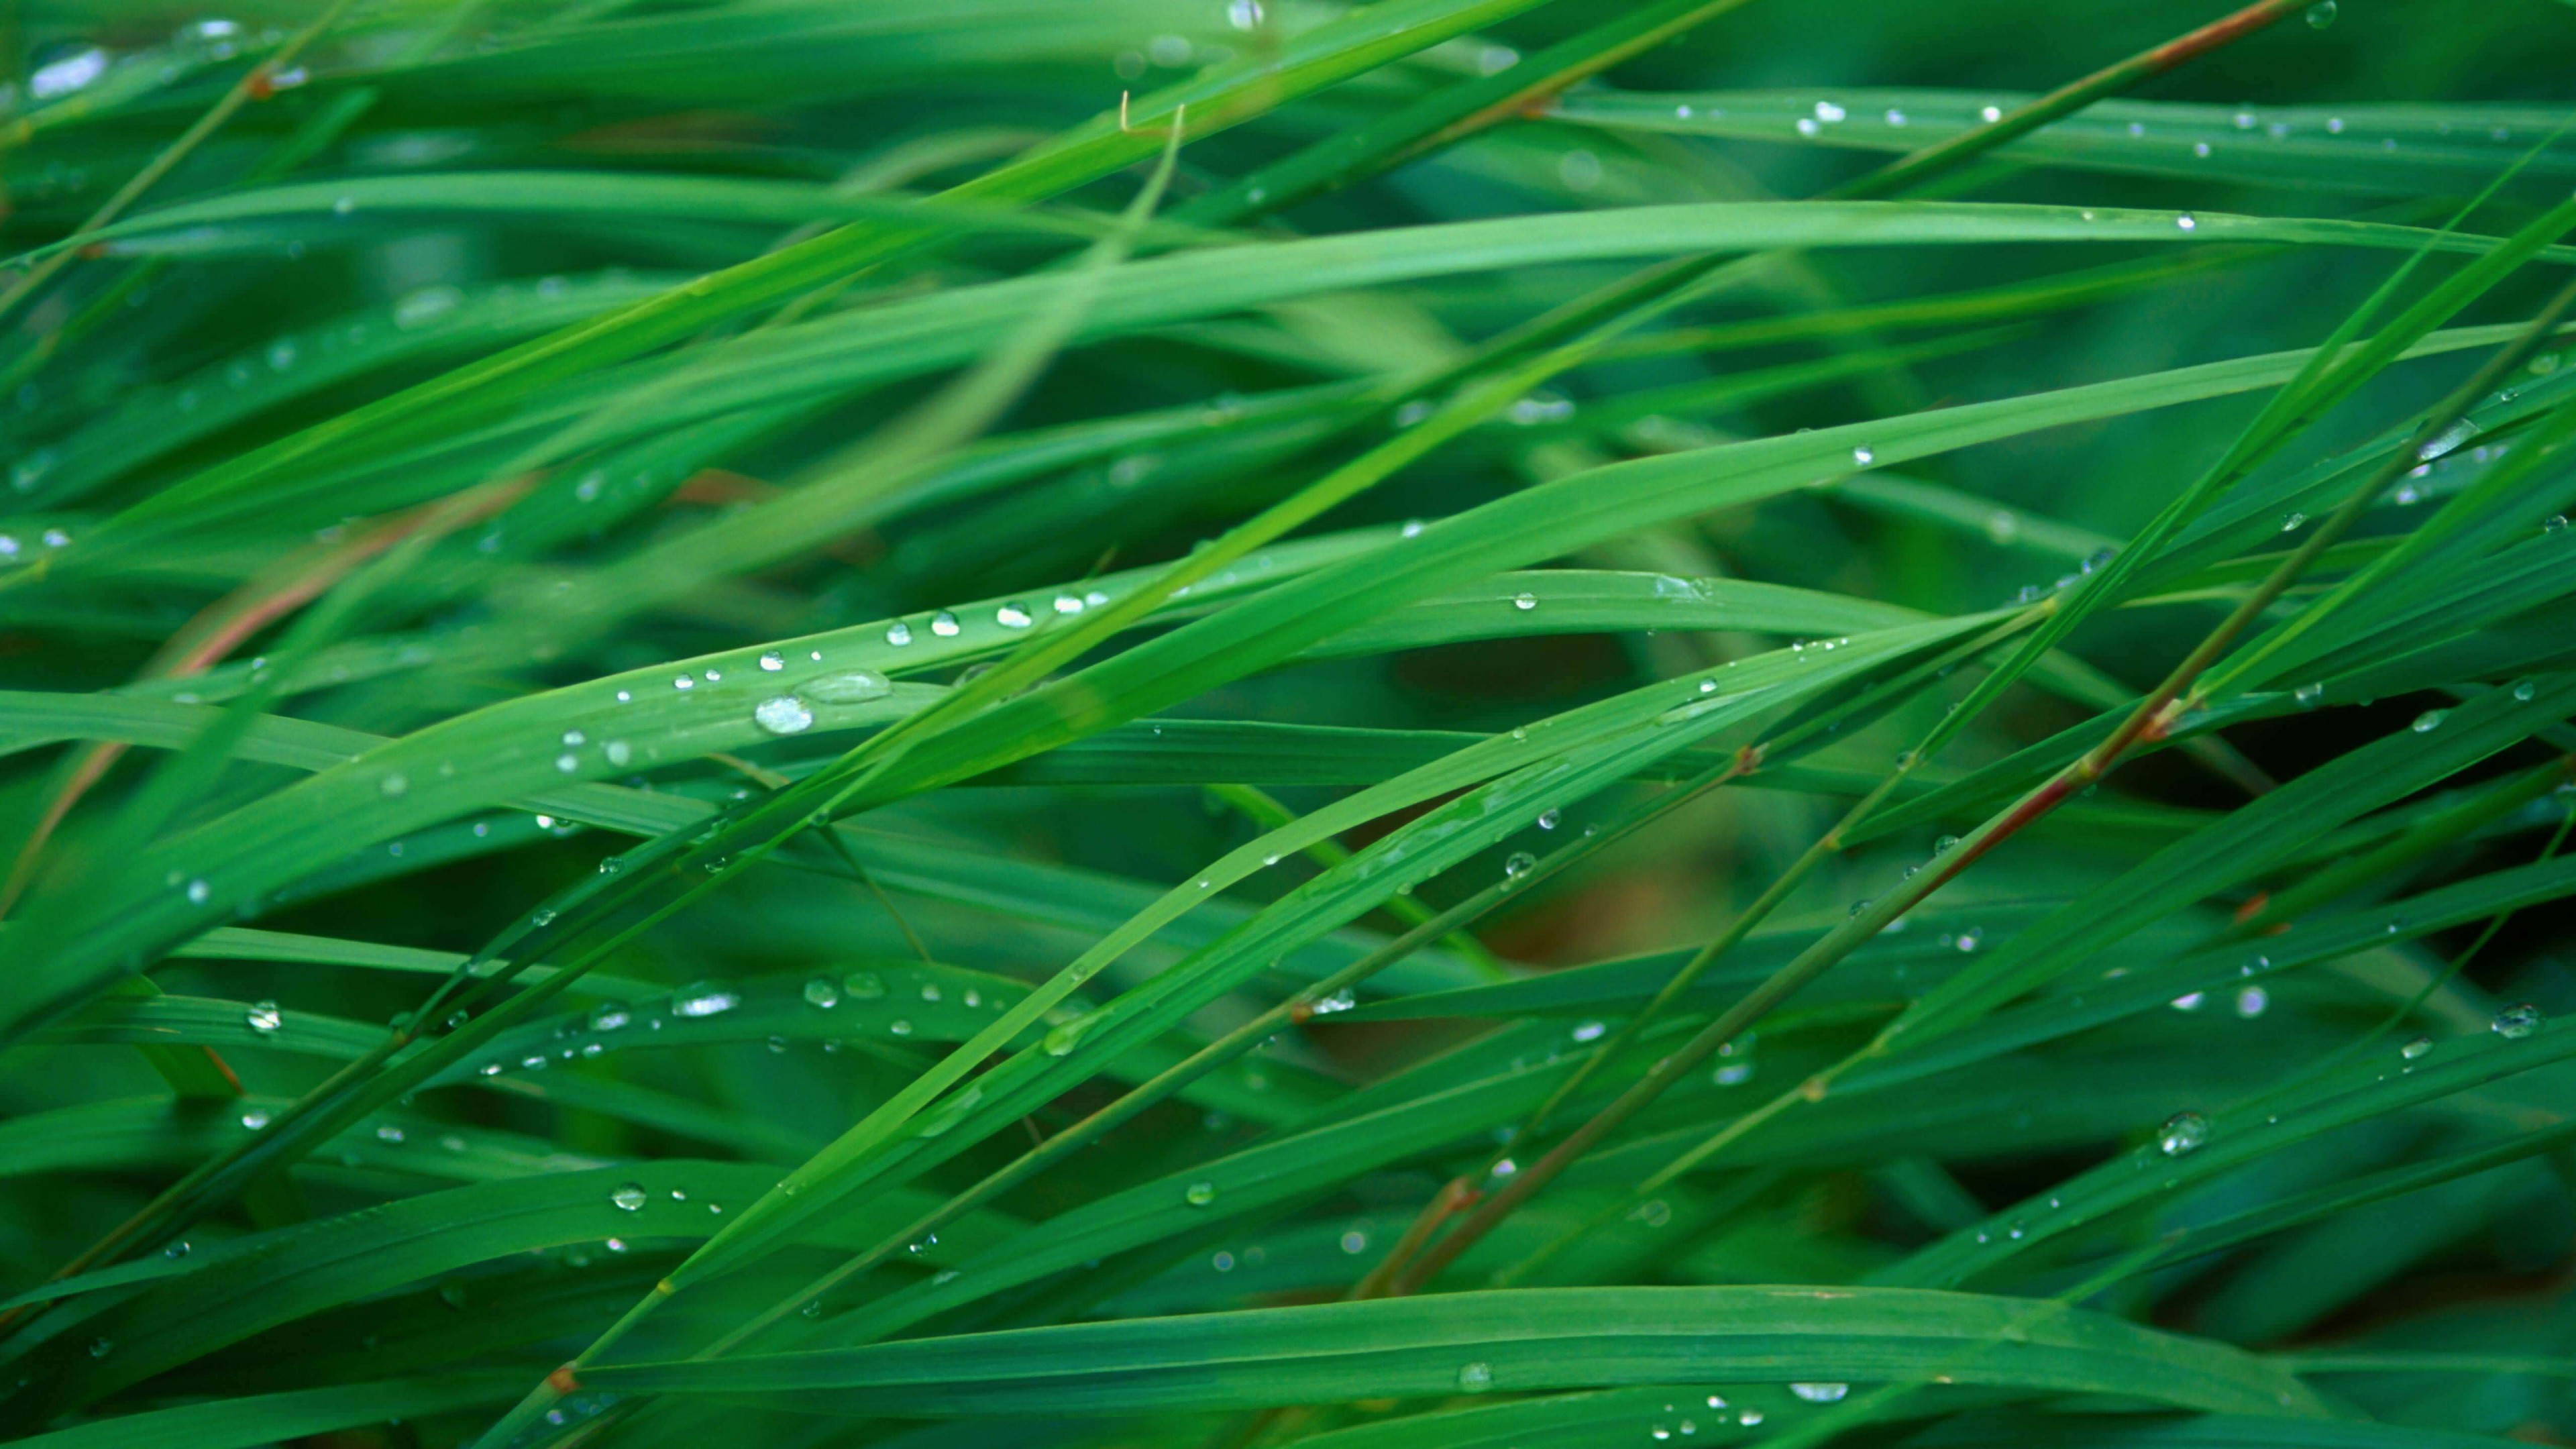 Green Blades Of Grass Wallpaper for Desktop 4K 3840x2160